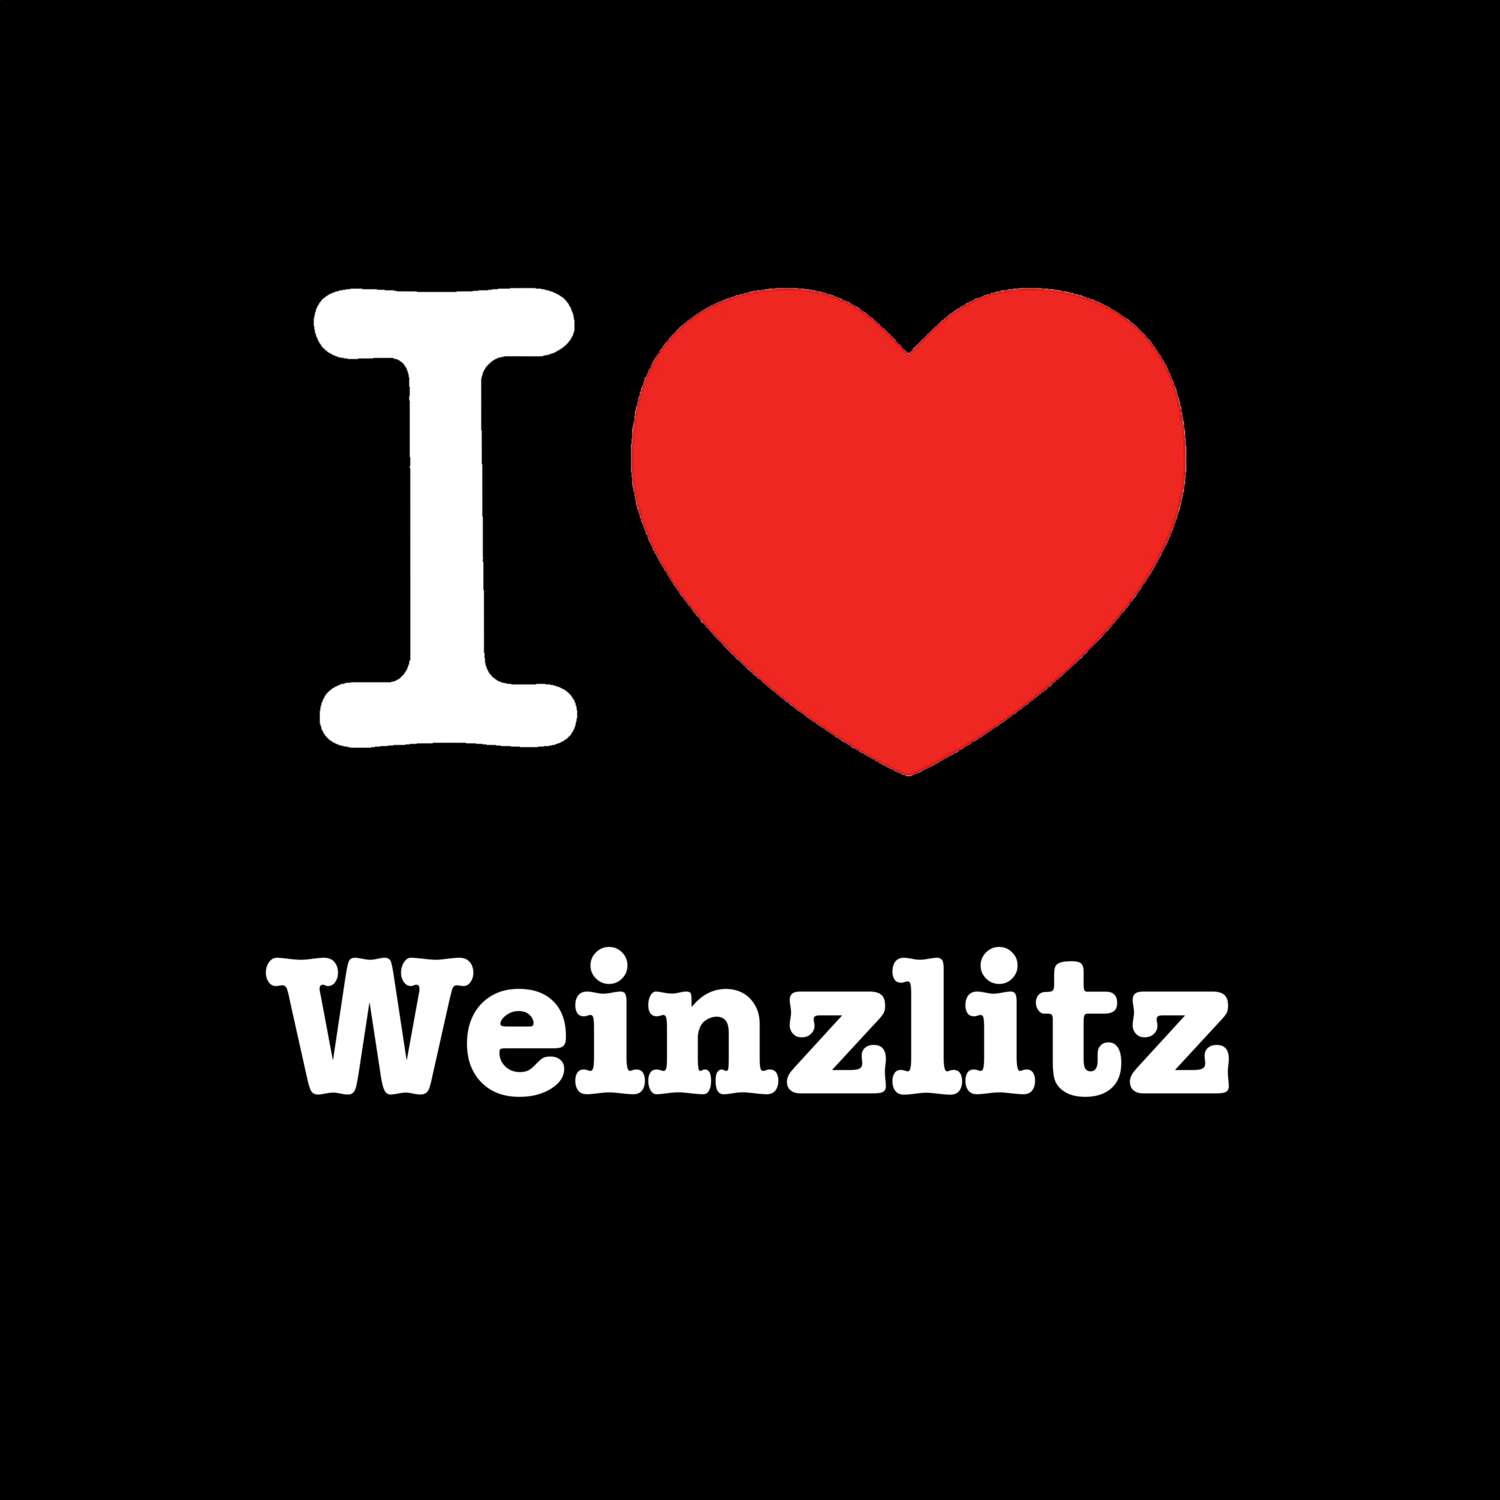 Weinzlitz T-Shirt »I love«